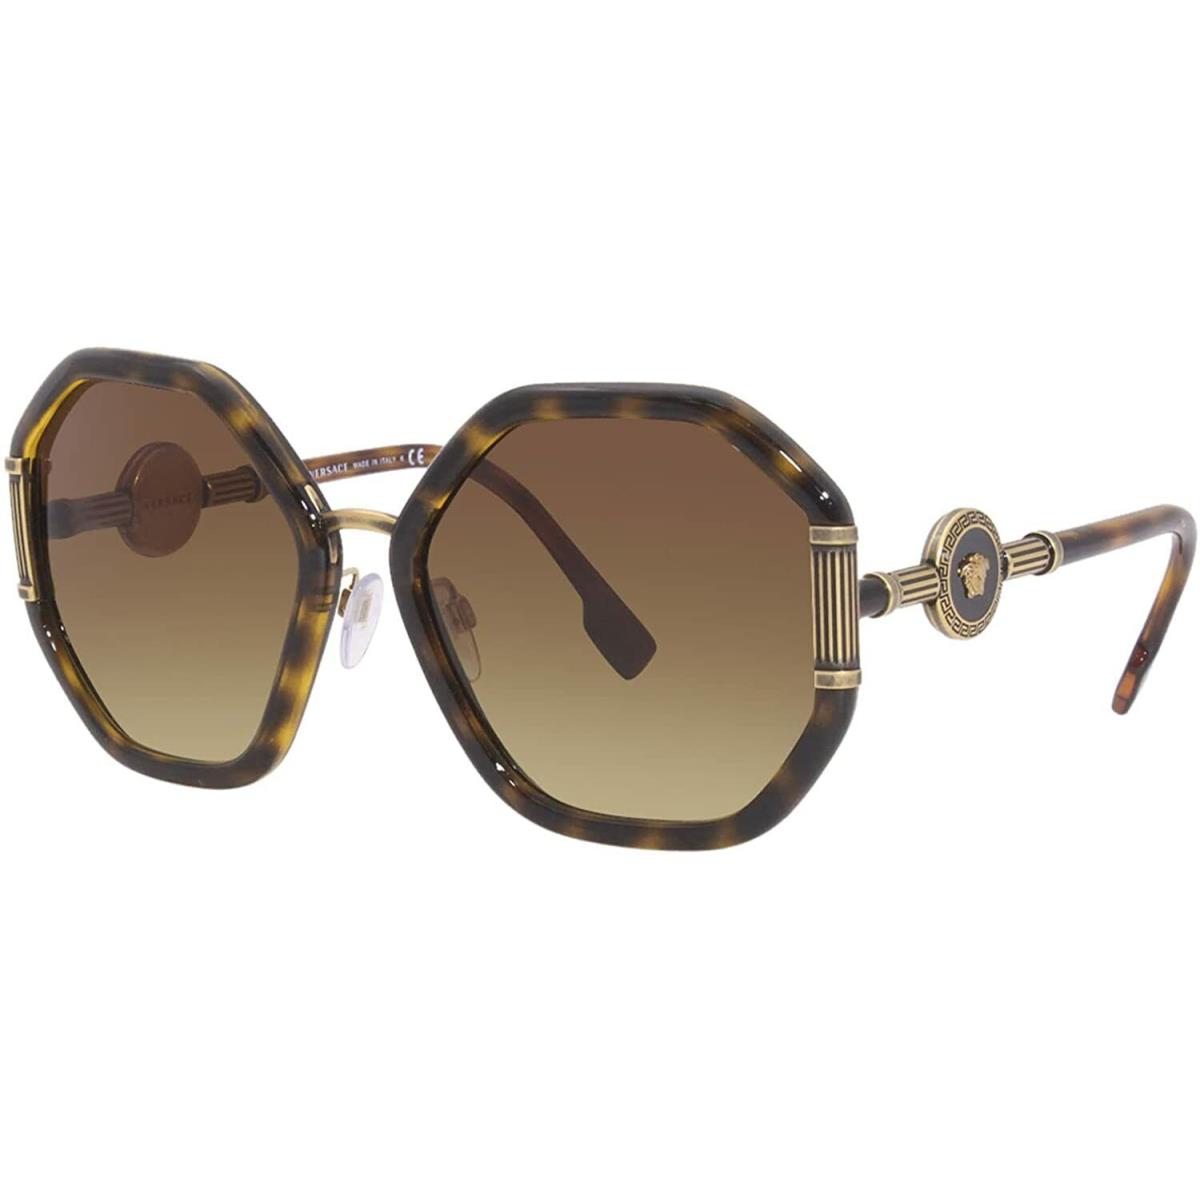 Versace Sunglasses VE4413 10813 60mm Havana / Brown Gradient Lens